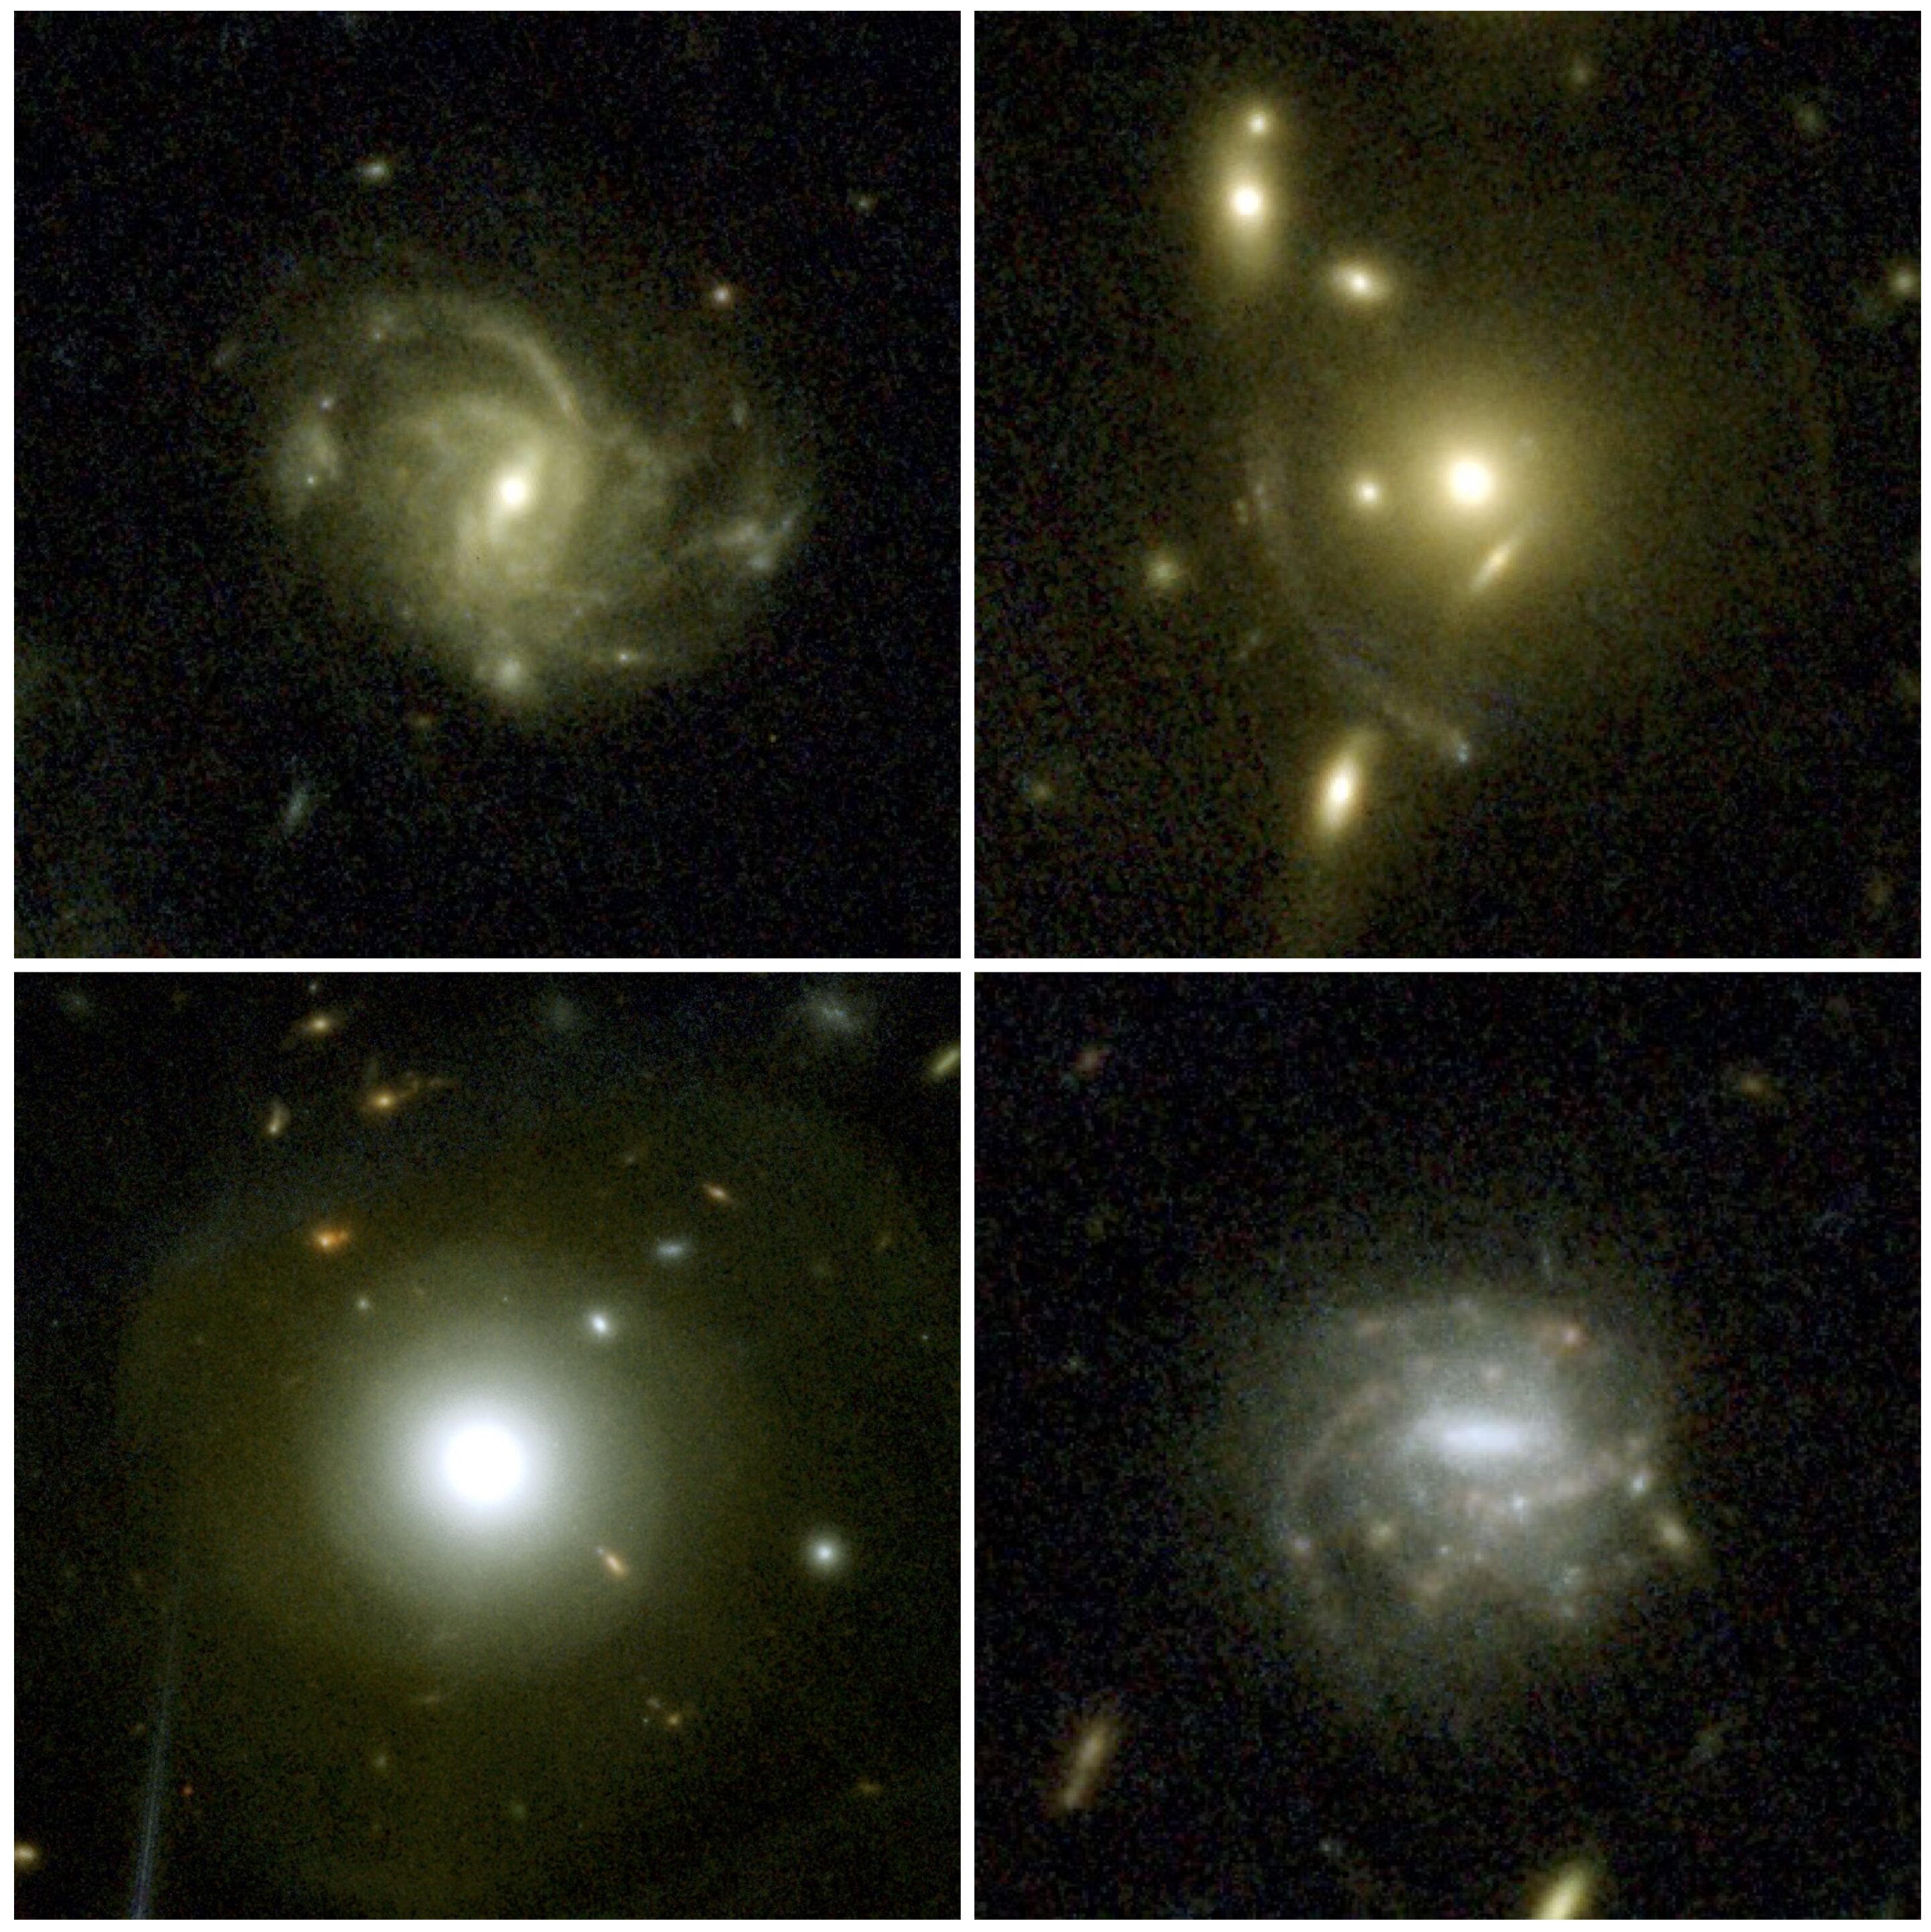 Imágenes de cuatro galaxias de ejemplo seleccionadas de la primera época de las observaciones de COSMOS-Web NIRCam, que destacan la gama de estructuras que se pueden ver. En la parte superior izquierda hay una galaxia espiral barrada; en la esquina superior derecha hay un ejemplo de lente gravitacional, donde la masa de la galaxia central hace que la luz de una galaxia distante se estire en arcos; en la parte inferior izquierda hay una galaxia cercana que muestra capas de material, lo que sugiere que se fusionó con otra galaxia en el pasado; en la parte inferior derecha hay una galaxia espiral barrada con varios grupos de formación estelar activa. Crédito: COSMOS-Web/Kartaltepe, Casey, Franco, Larson, et al./RIT/UT Austin/CANDIDE.